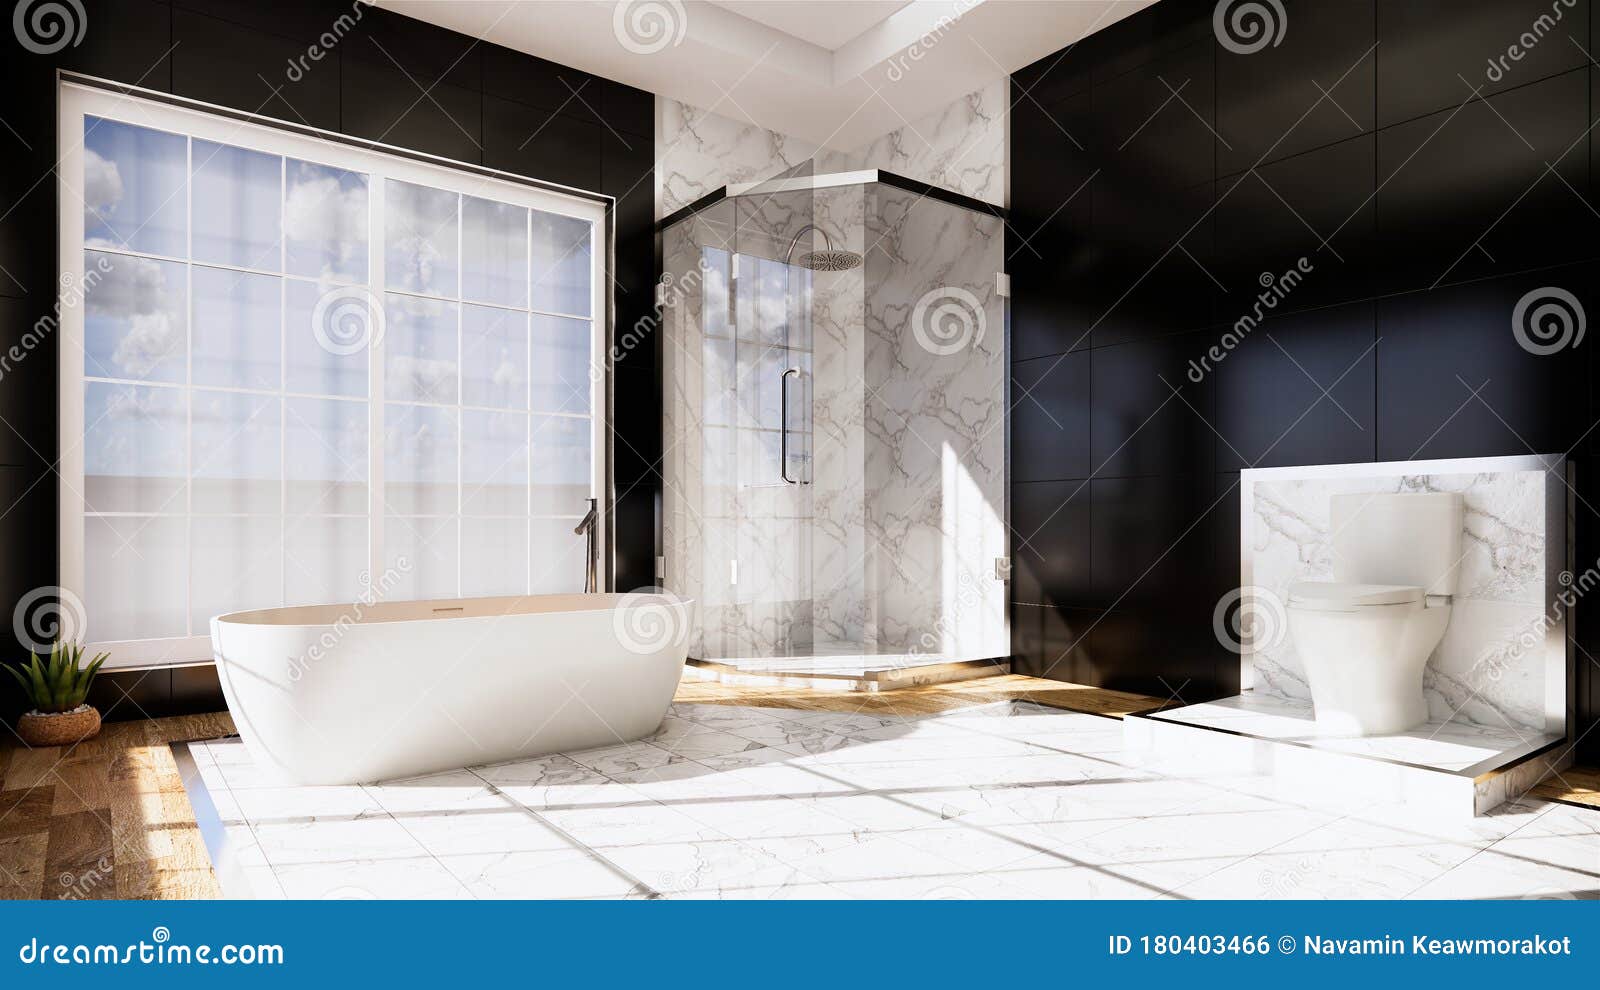 Zen Design Toilet Tiles Wall and Floor - Japanese Style. 3D Rendering ...